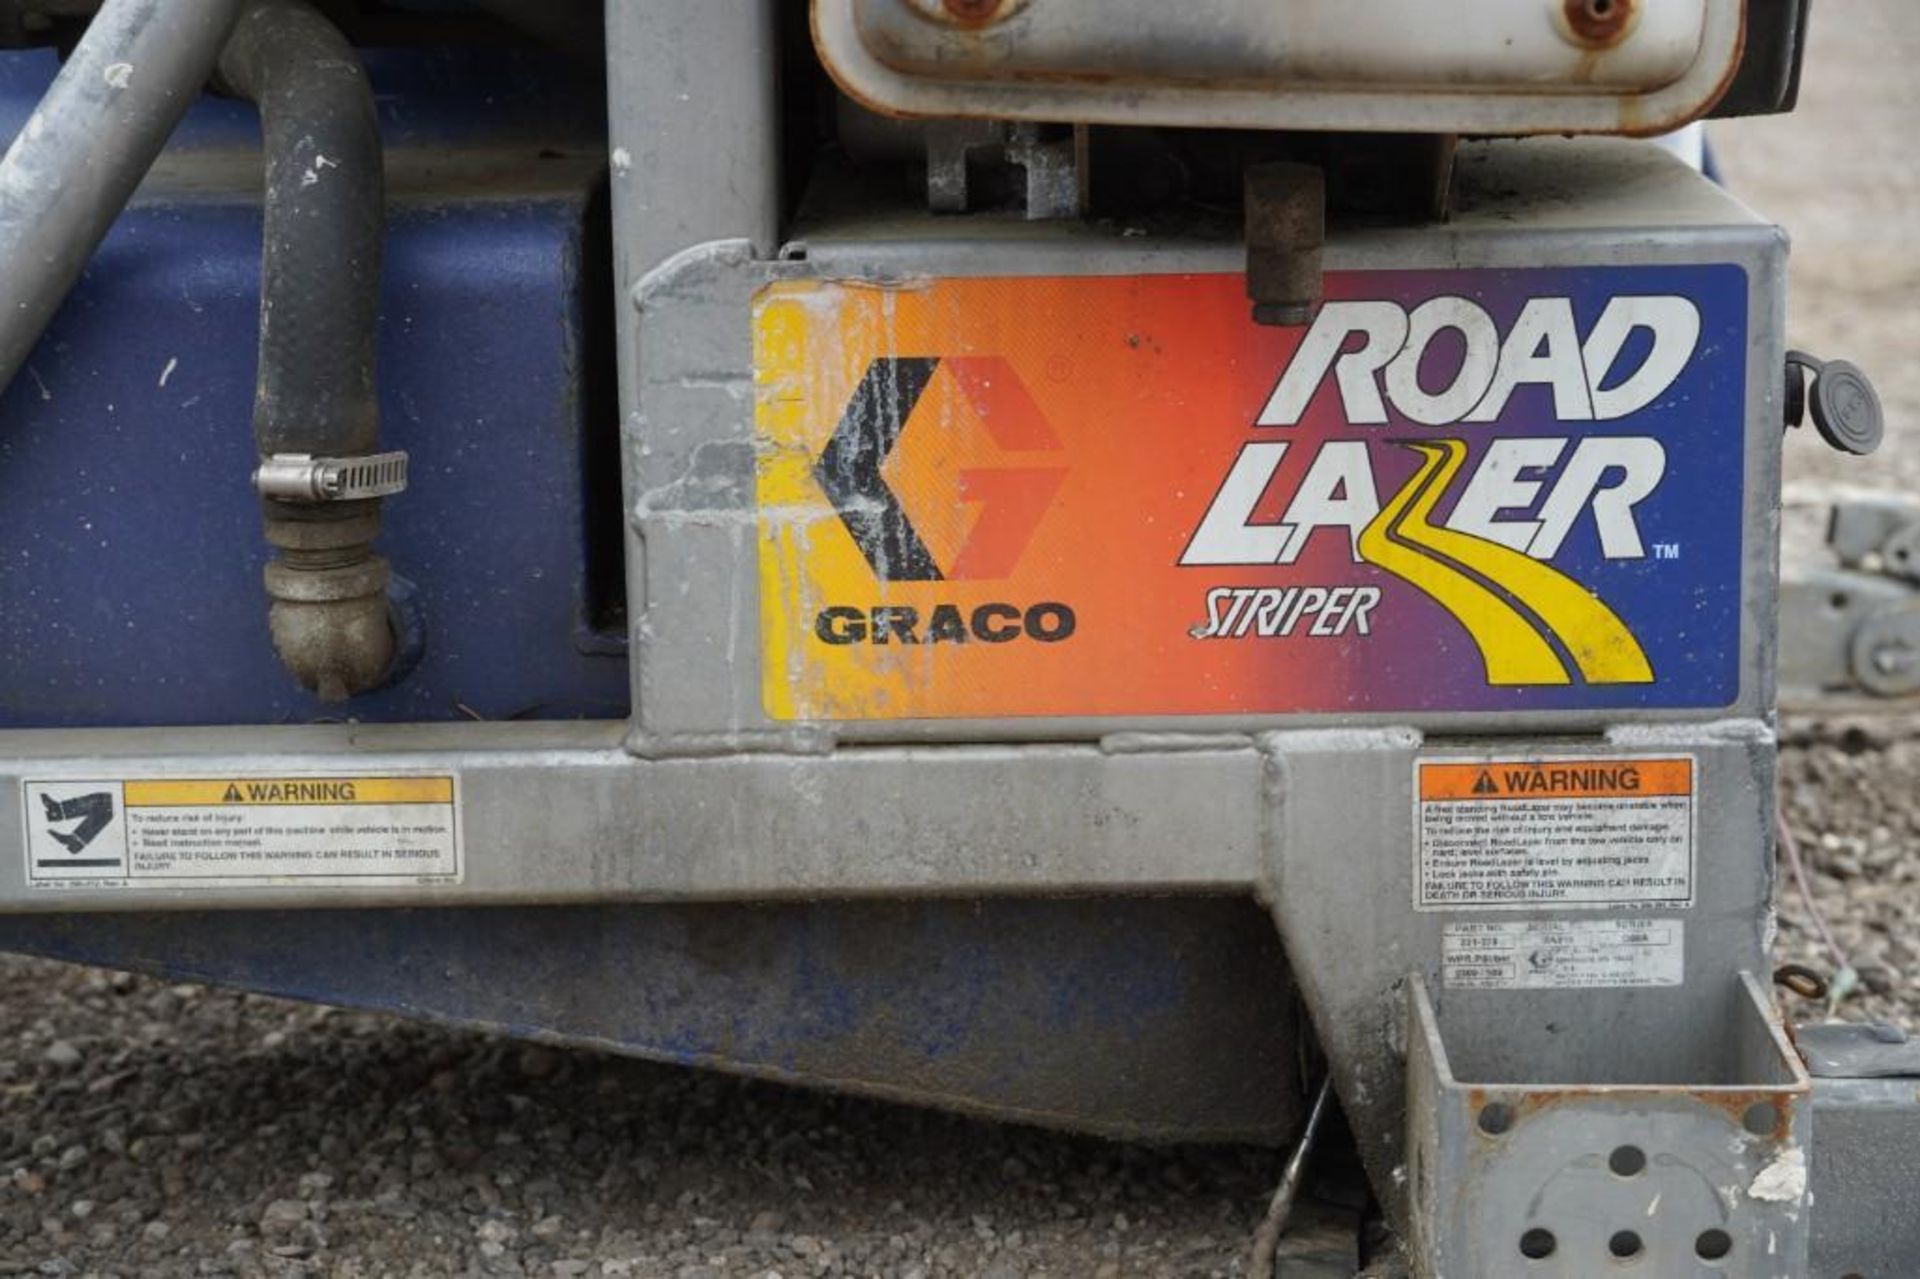 1997 Graco Road Lazer Striper - Image 19 of 20